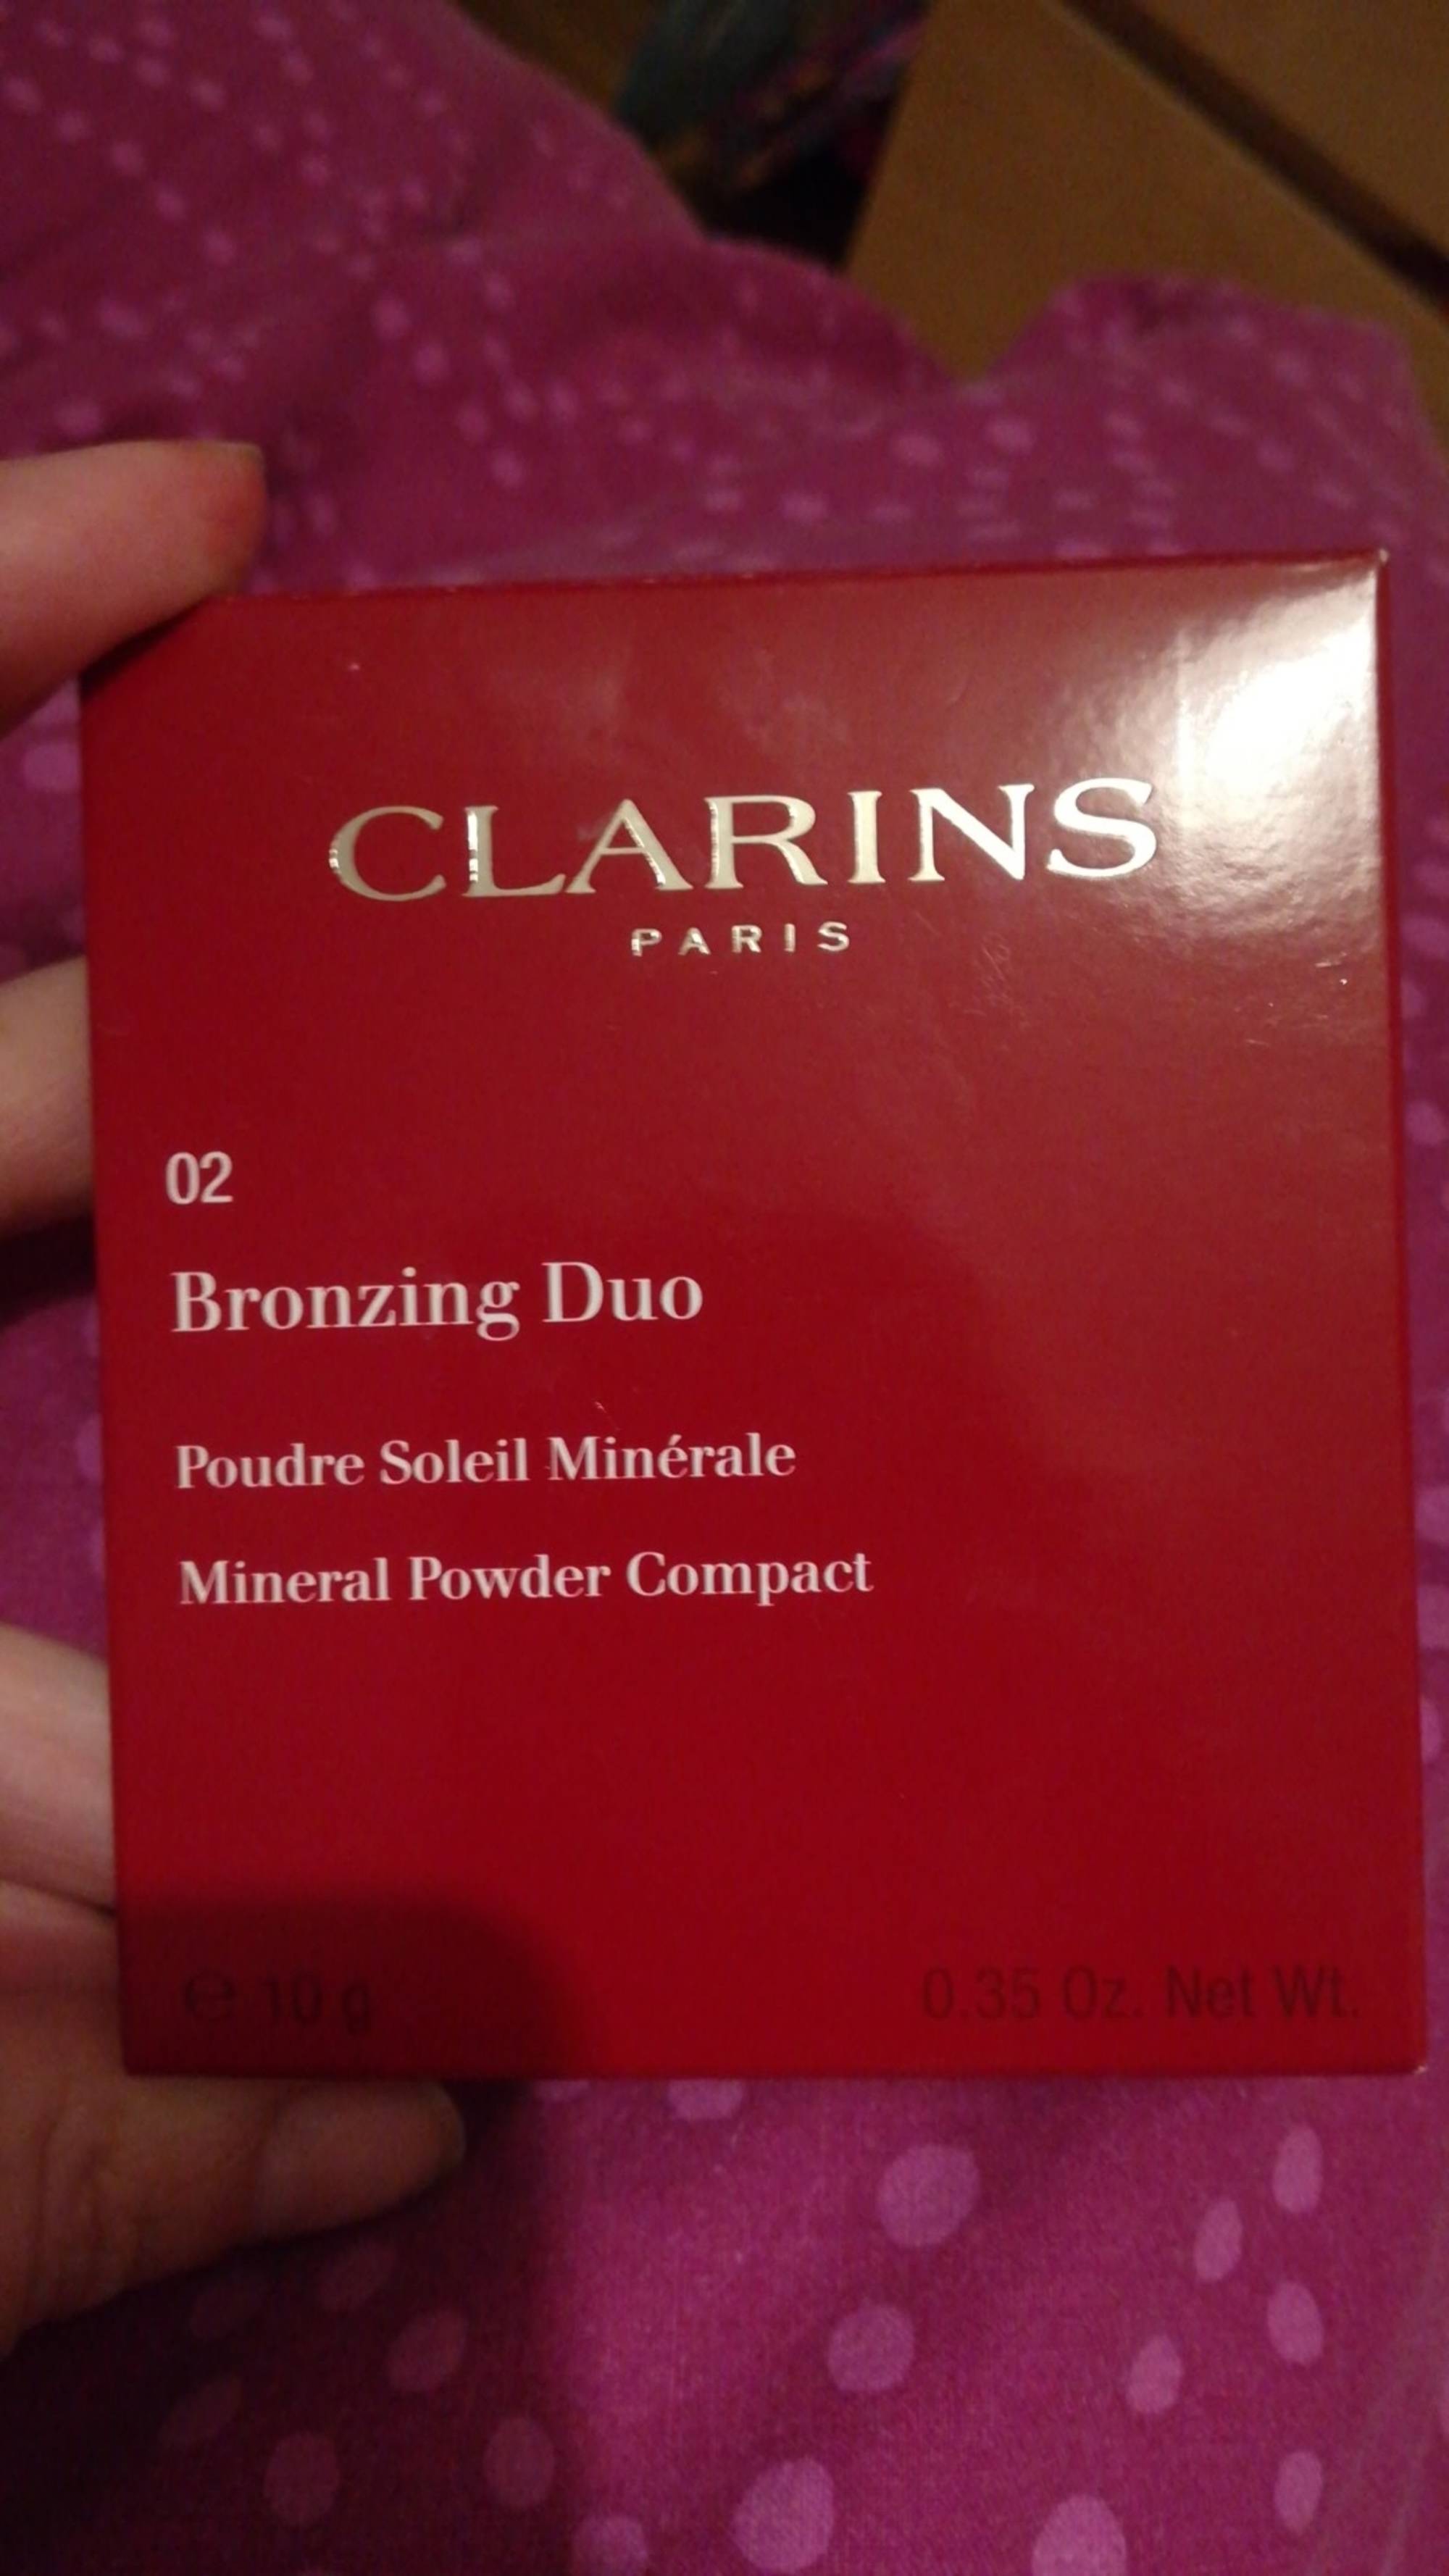 CLARINS - 02 Bronzing duo  - Poudre soleil minérale